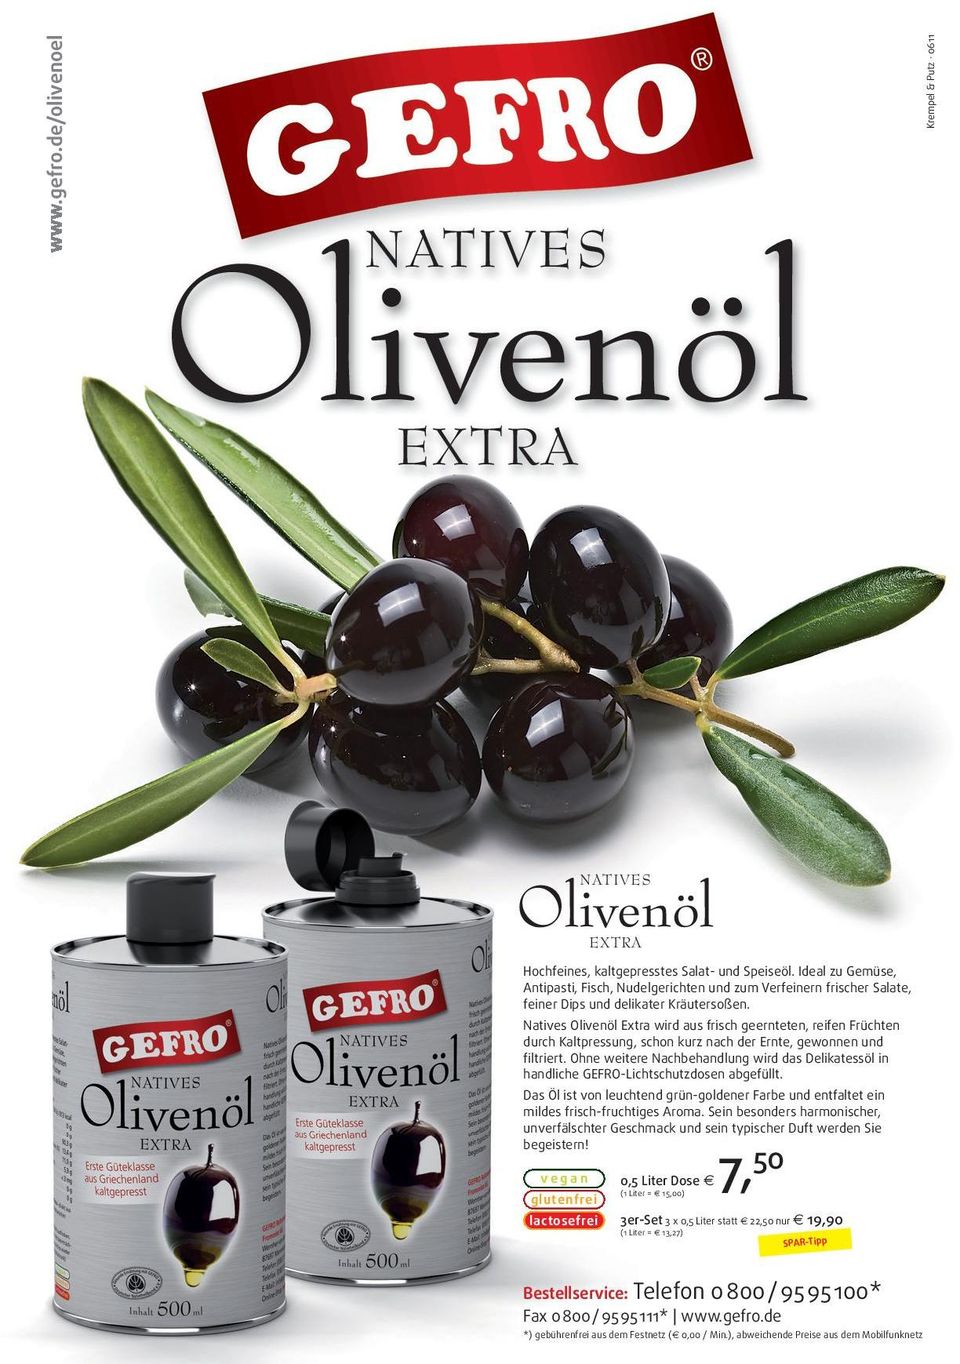 Natives Olivenöl Extra wird aus frisch geernteten, reifen Früchten durch Kaltpressung, schon kurz nach der Ernte, gewonnen und filtriert.